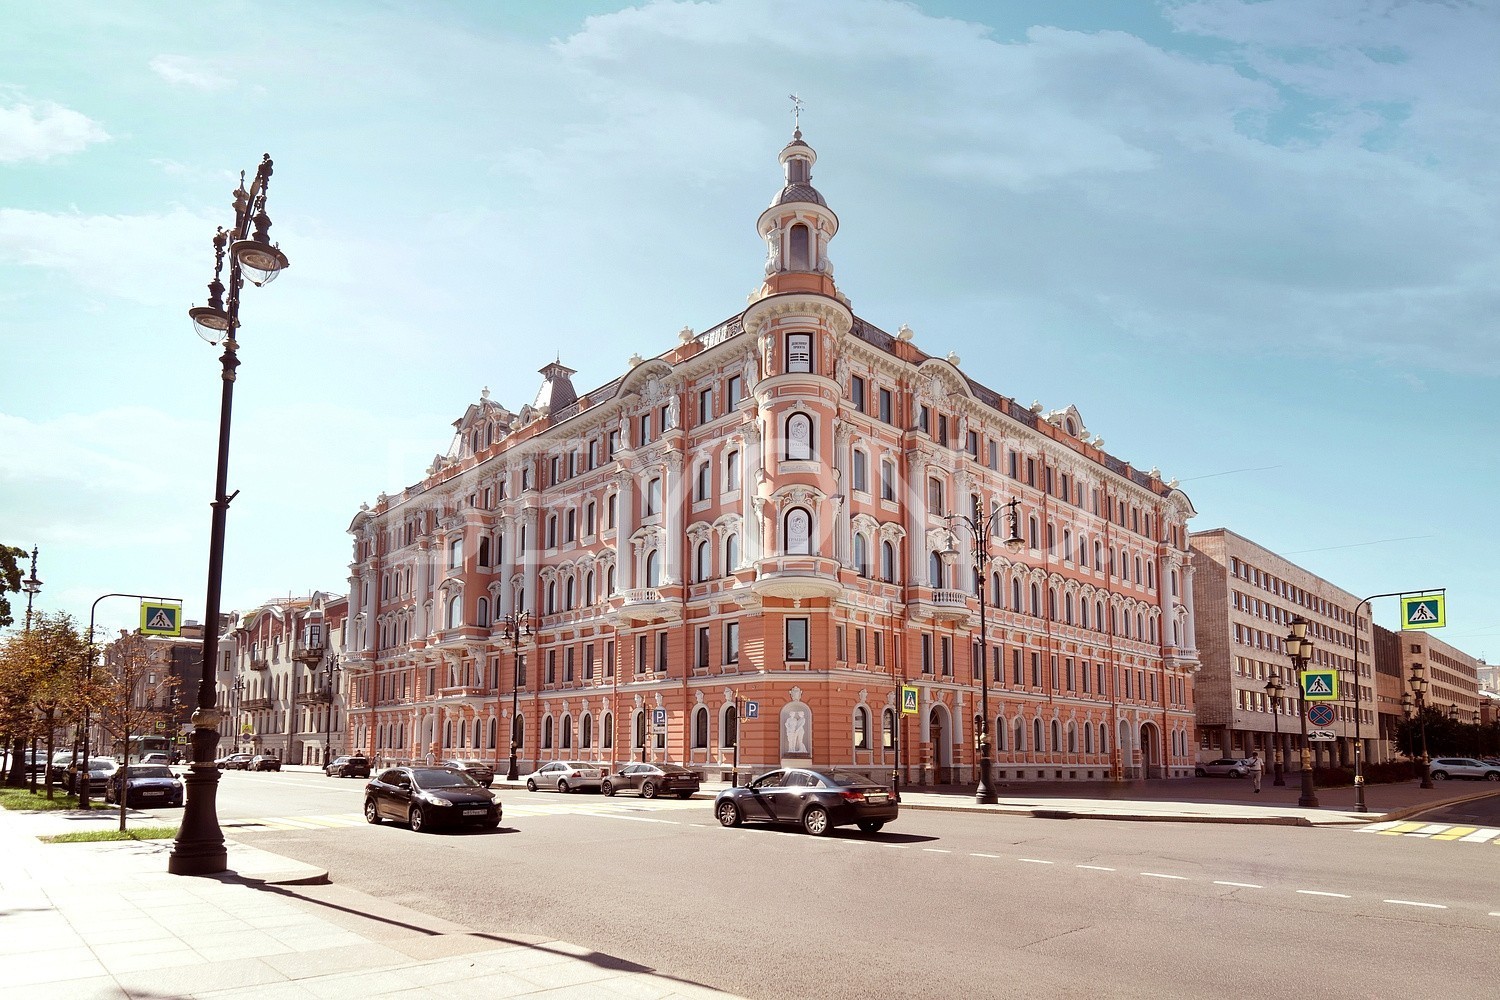 Захарьевская, 41 - Коллекционная квартира с видом на Таврический сад pic-3